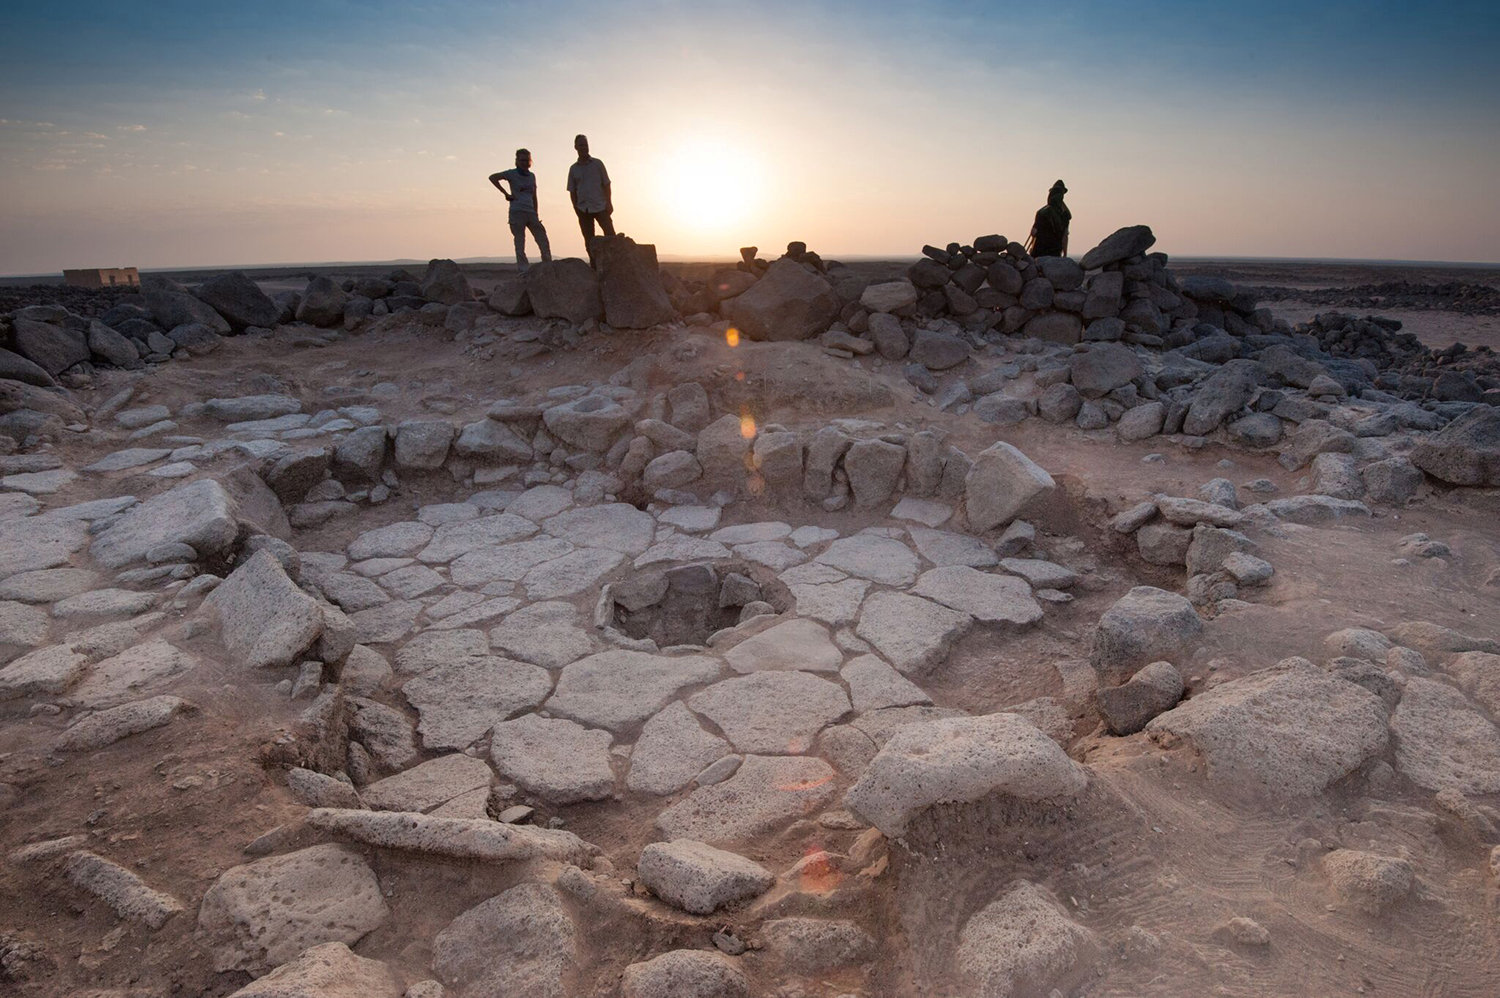 Hallan el pan más antiguo del mundo en sitio arqueológico en Jordania